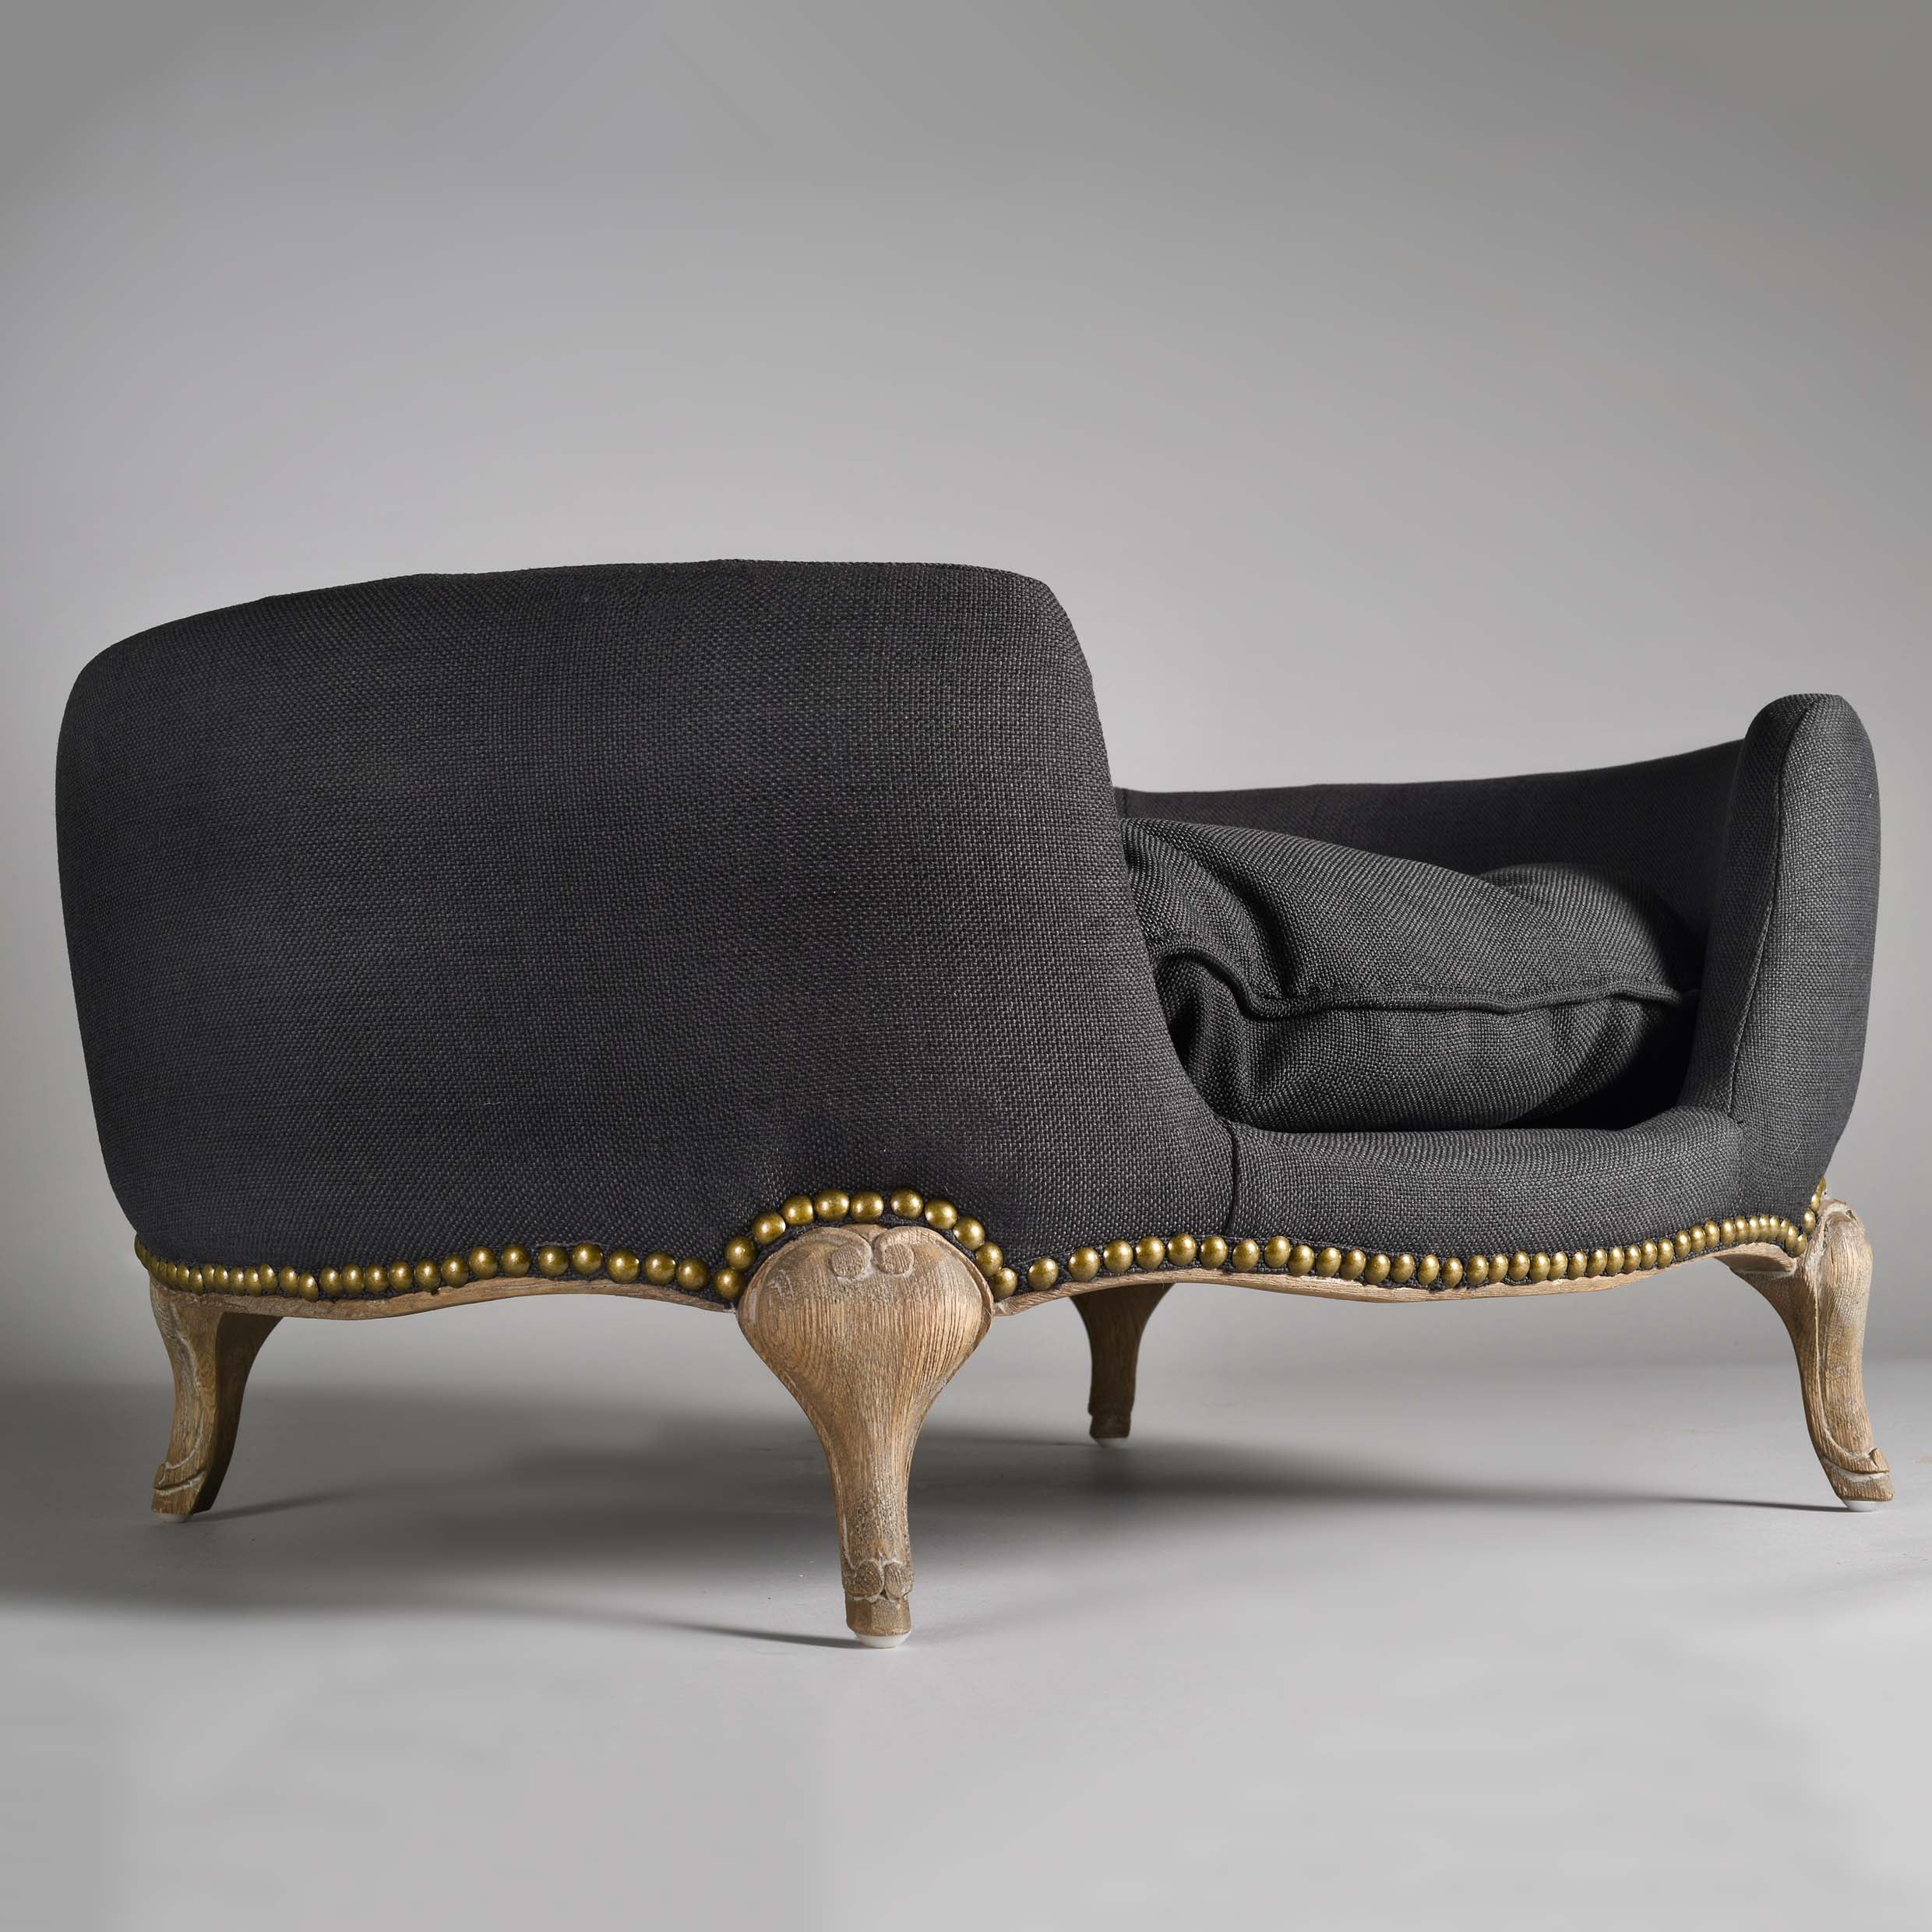 Louis Pawtton Originals Designer Round Dog Bed